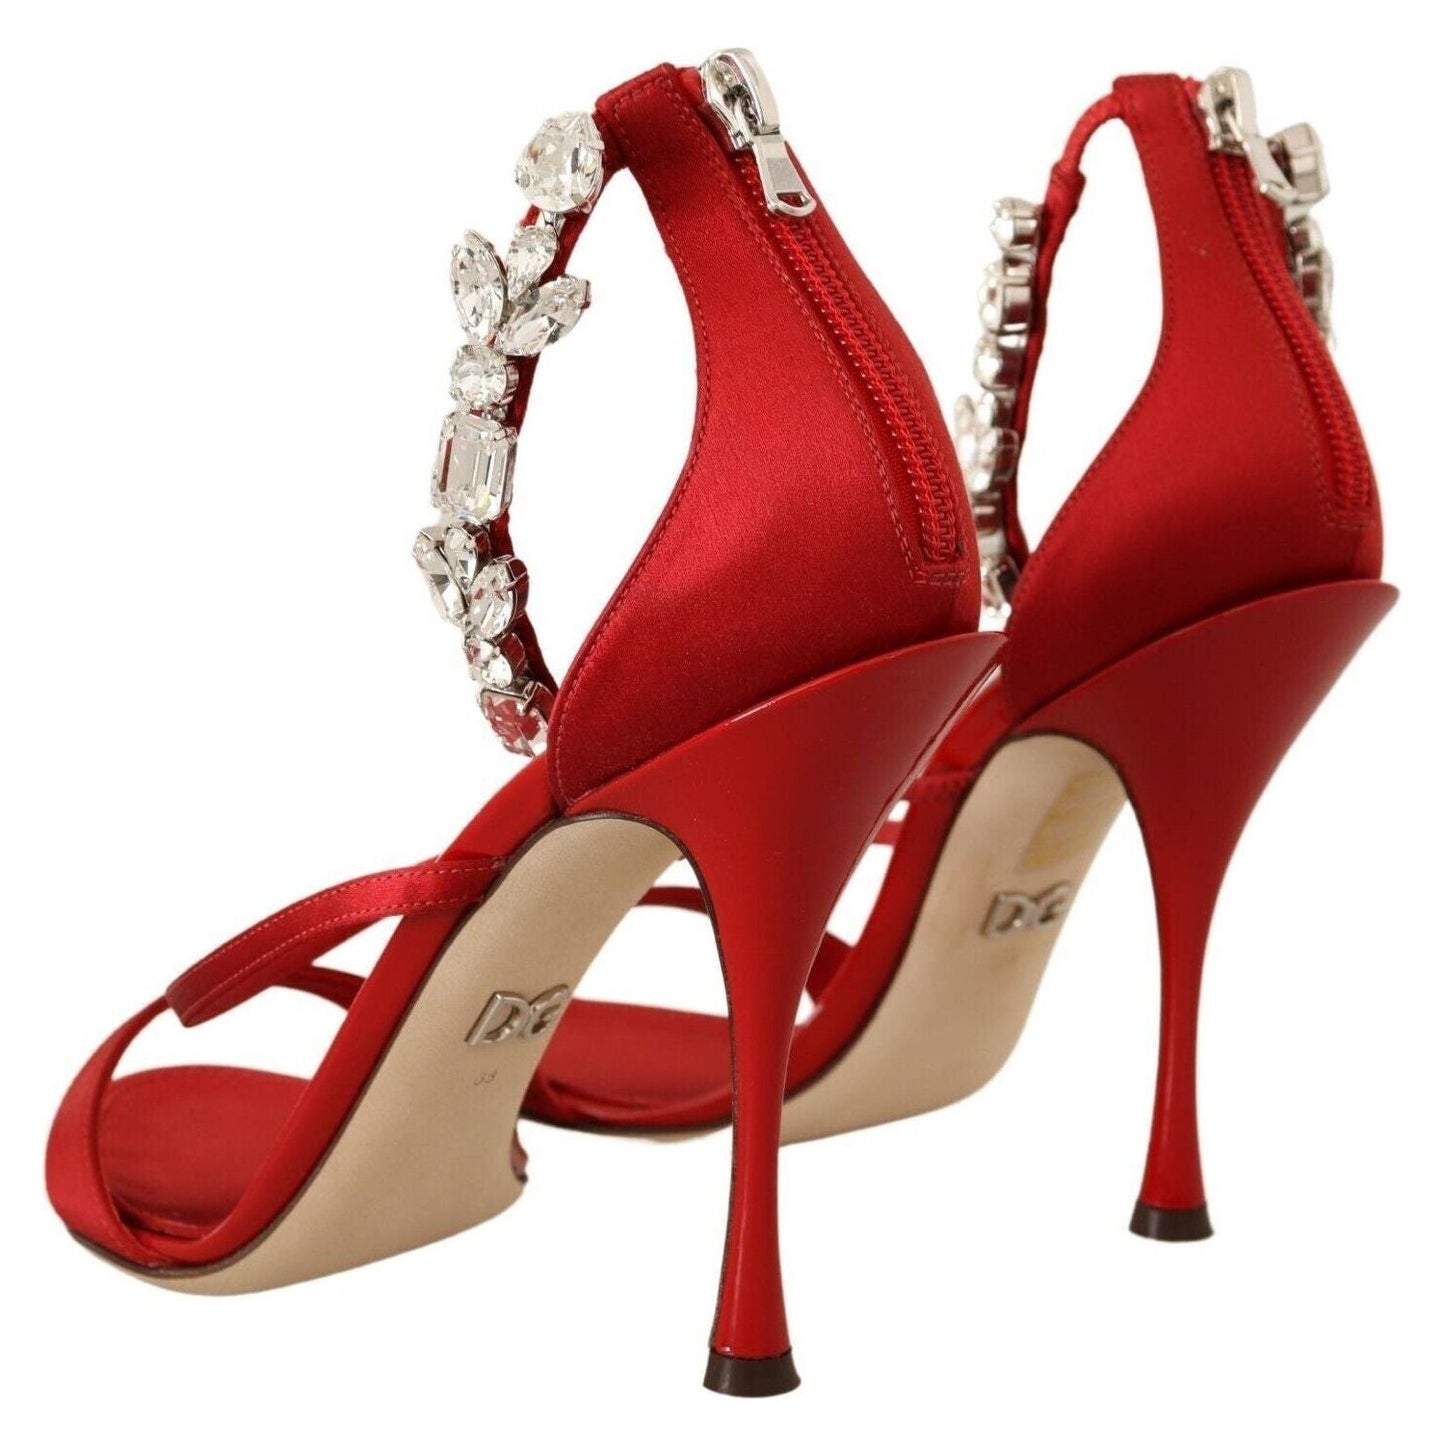 Dolce & Gabbana Red Crystal-Embellished Heel Sandals Heeled Sandals red-satin-crystals-sandals-keira-heels-shoes s-l1600-2022-11-15T152018.279-2ef533c2-f8a.jpg